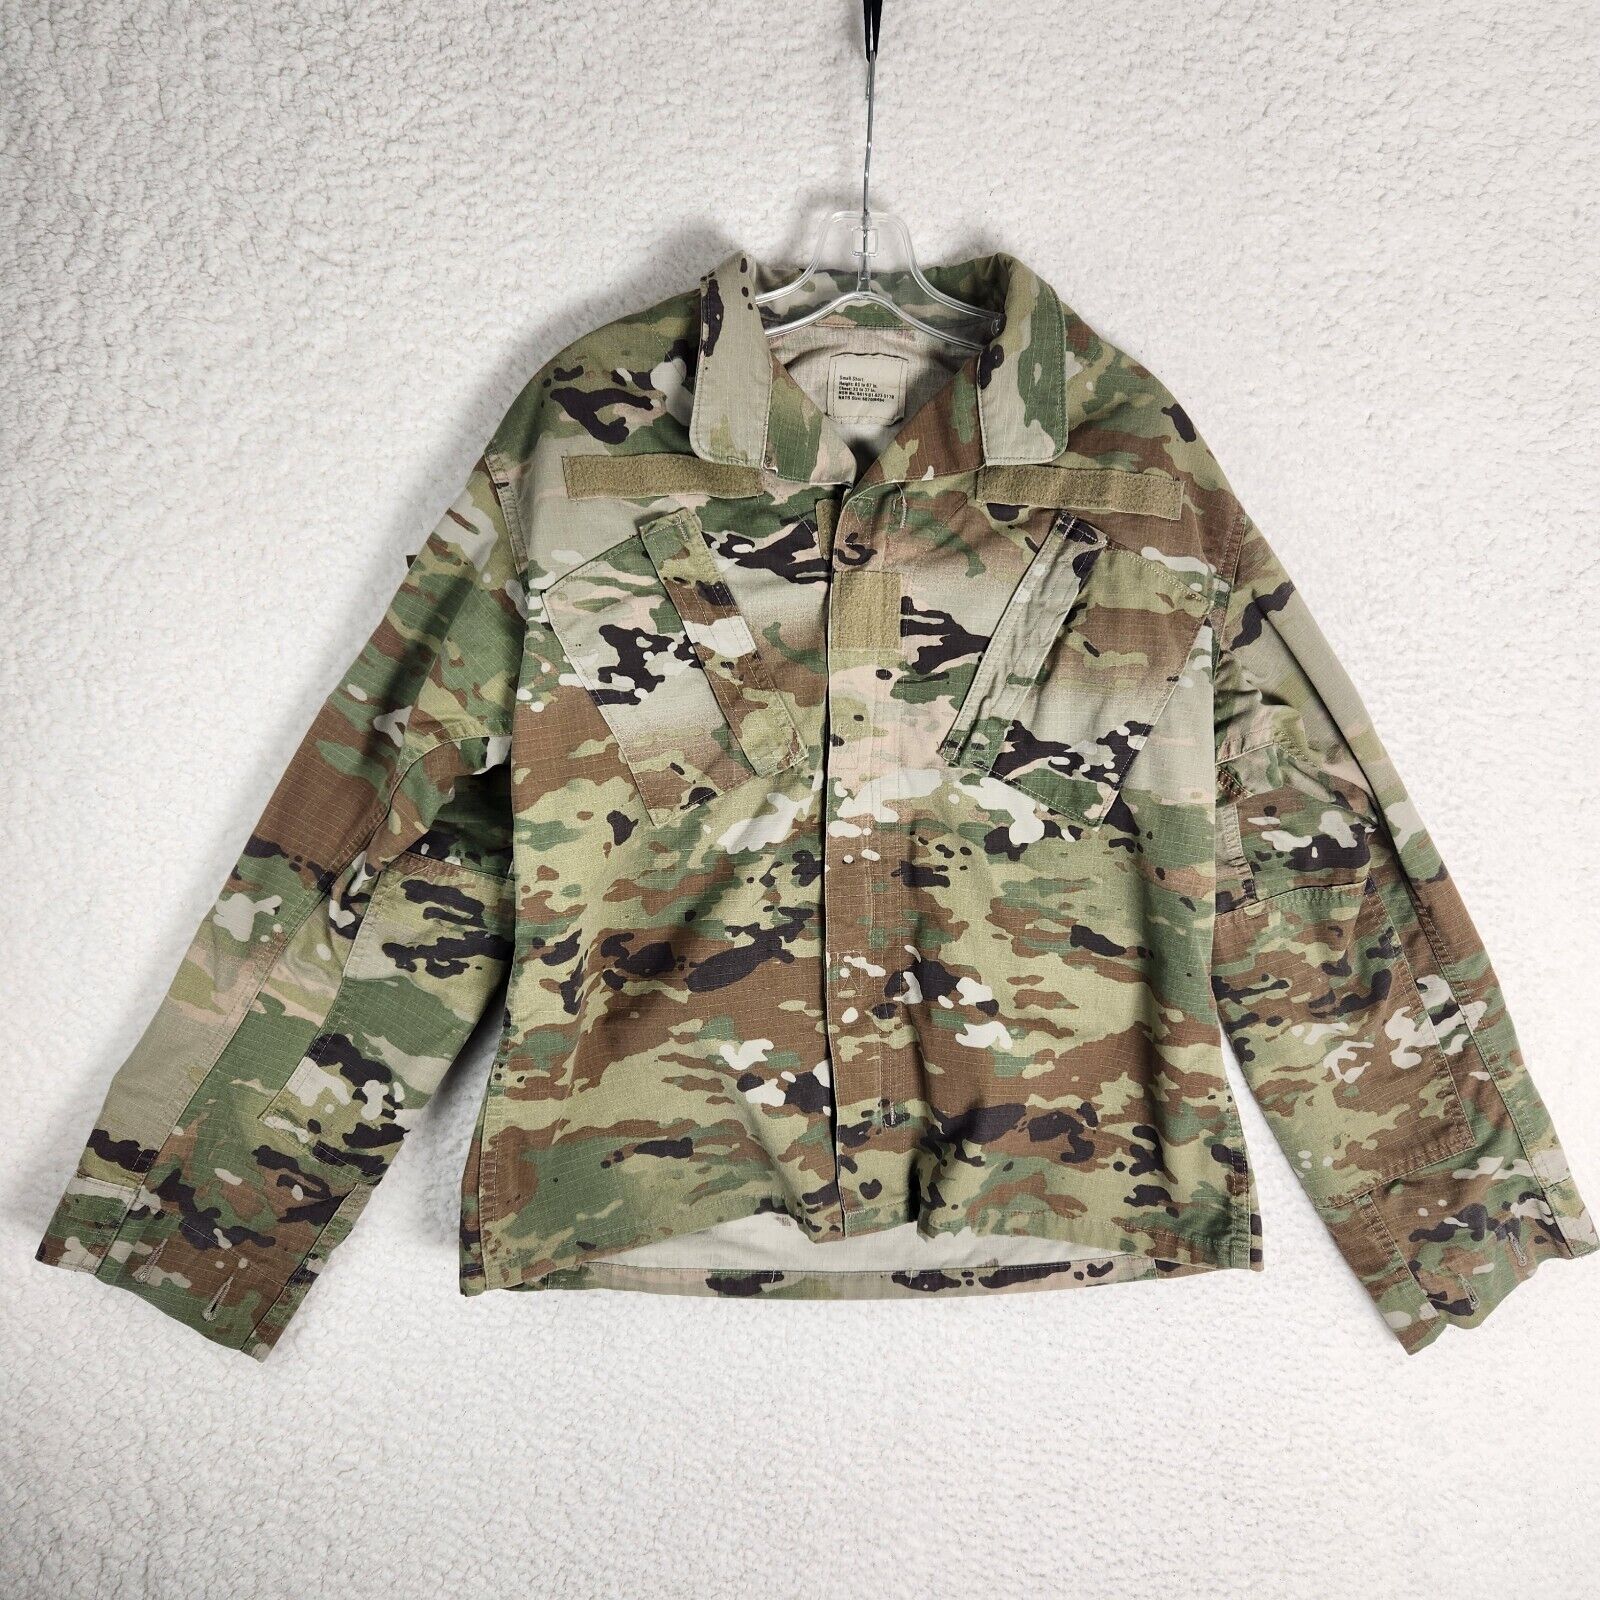 US Military OCP Combat Uniform Coat Adult Size Small Camo Perimeter Insect Guard